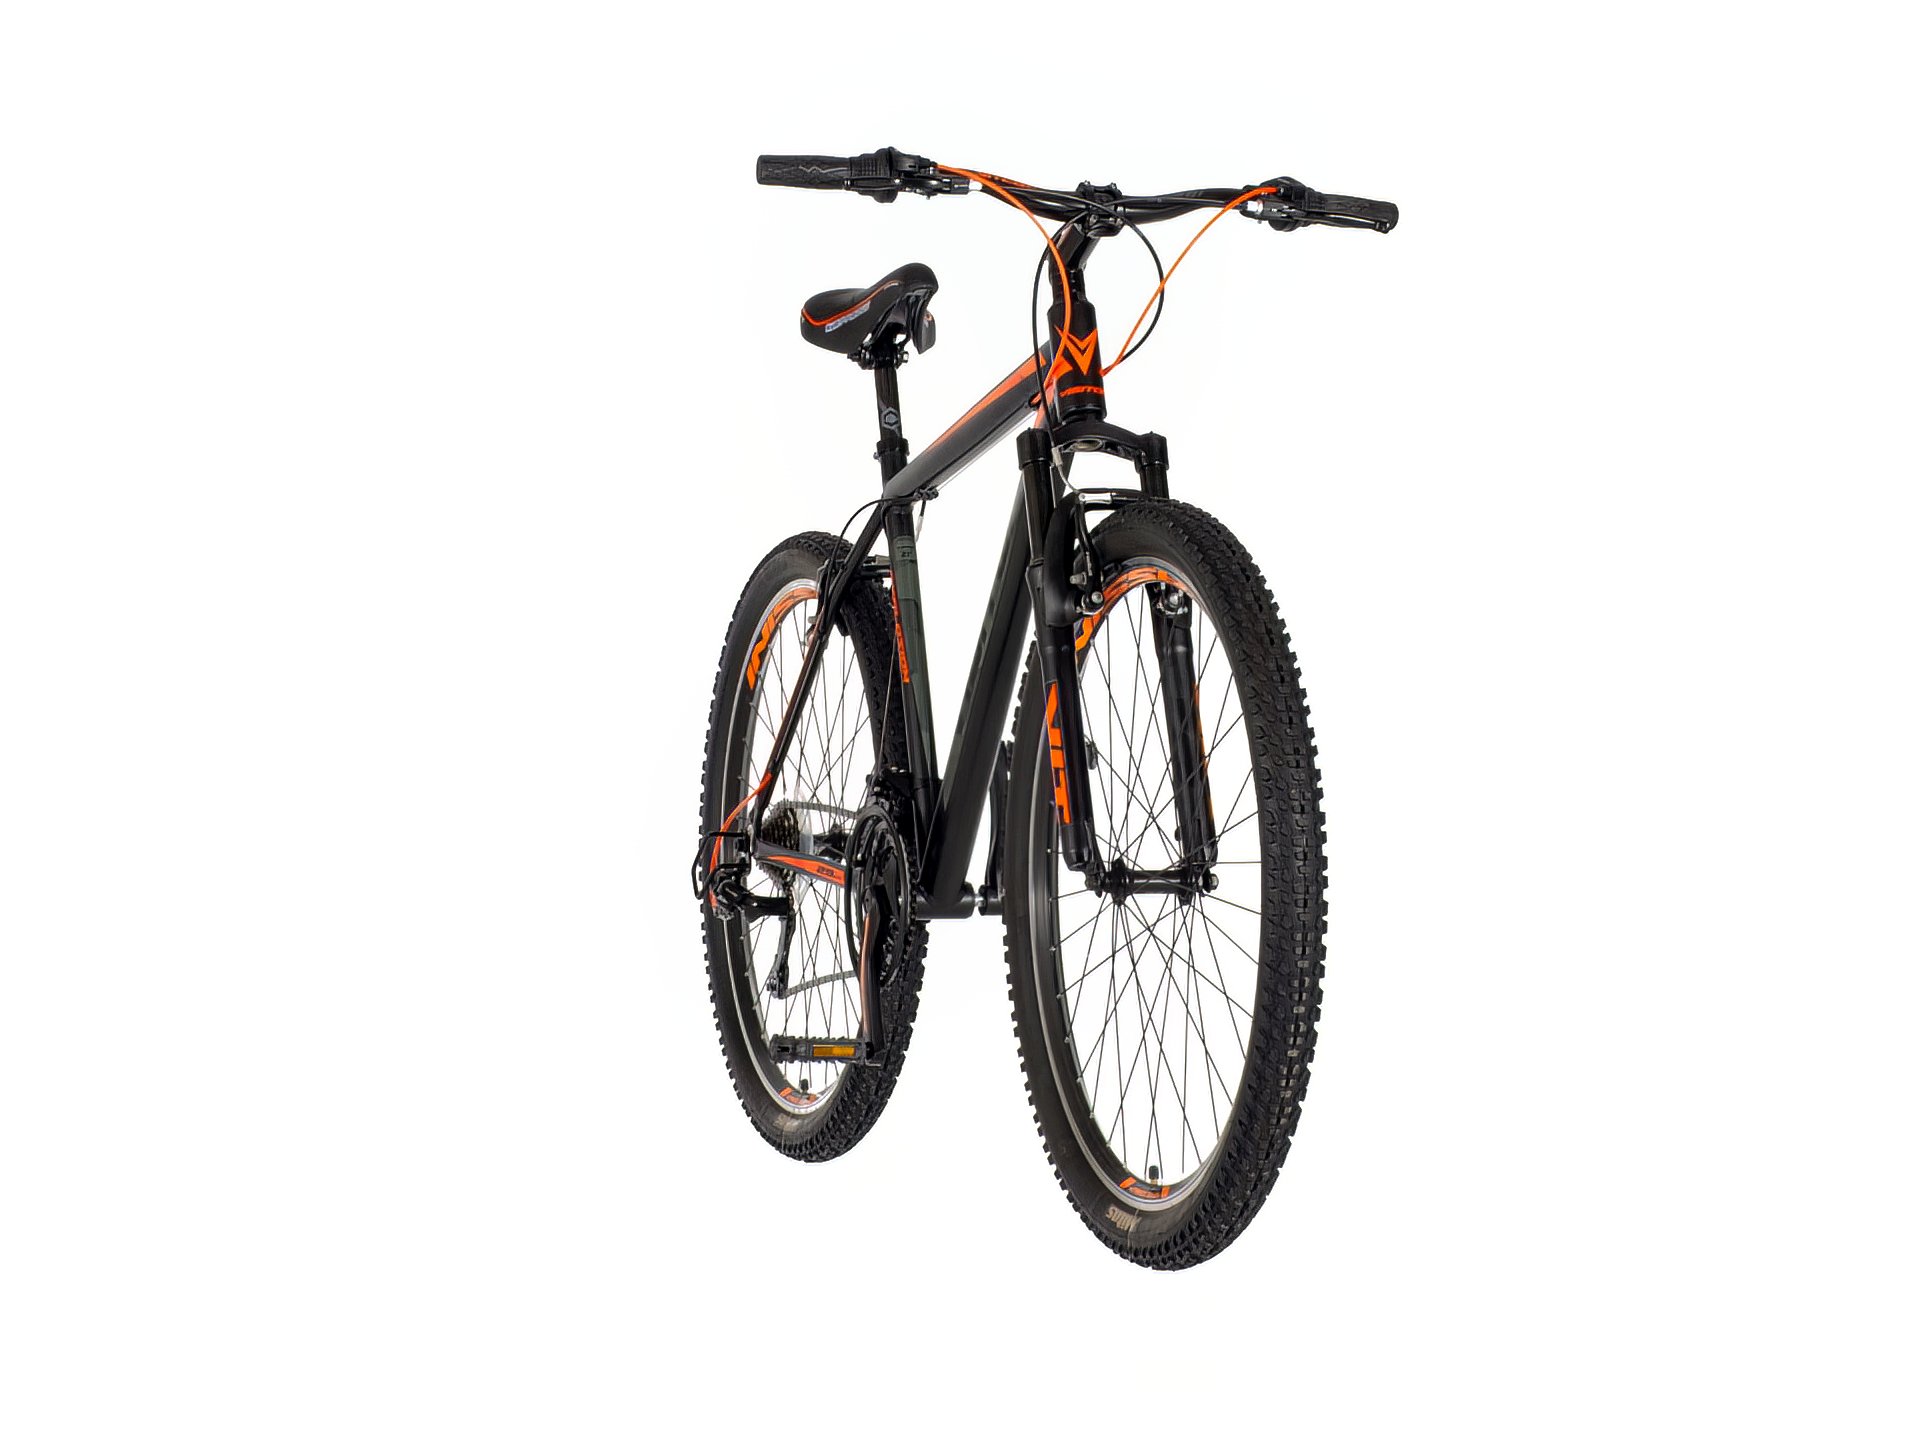 Crno narandžasta explosion  muška bicikla -exp291am